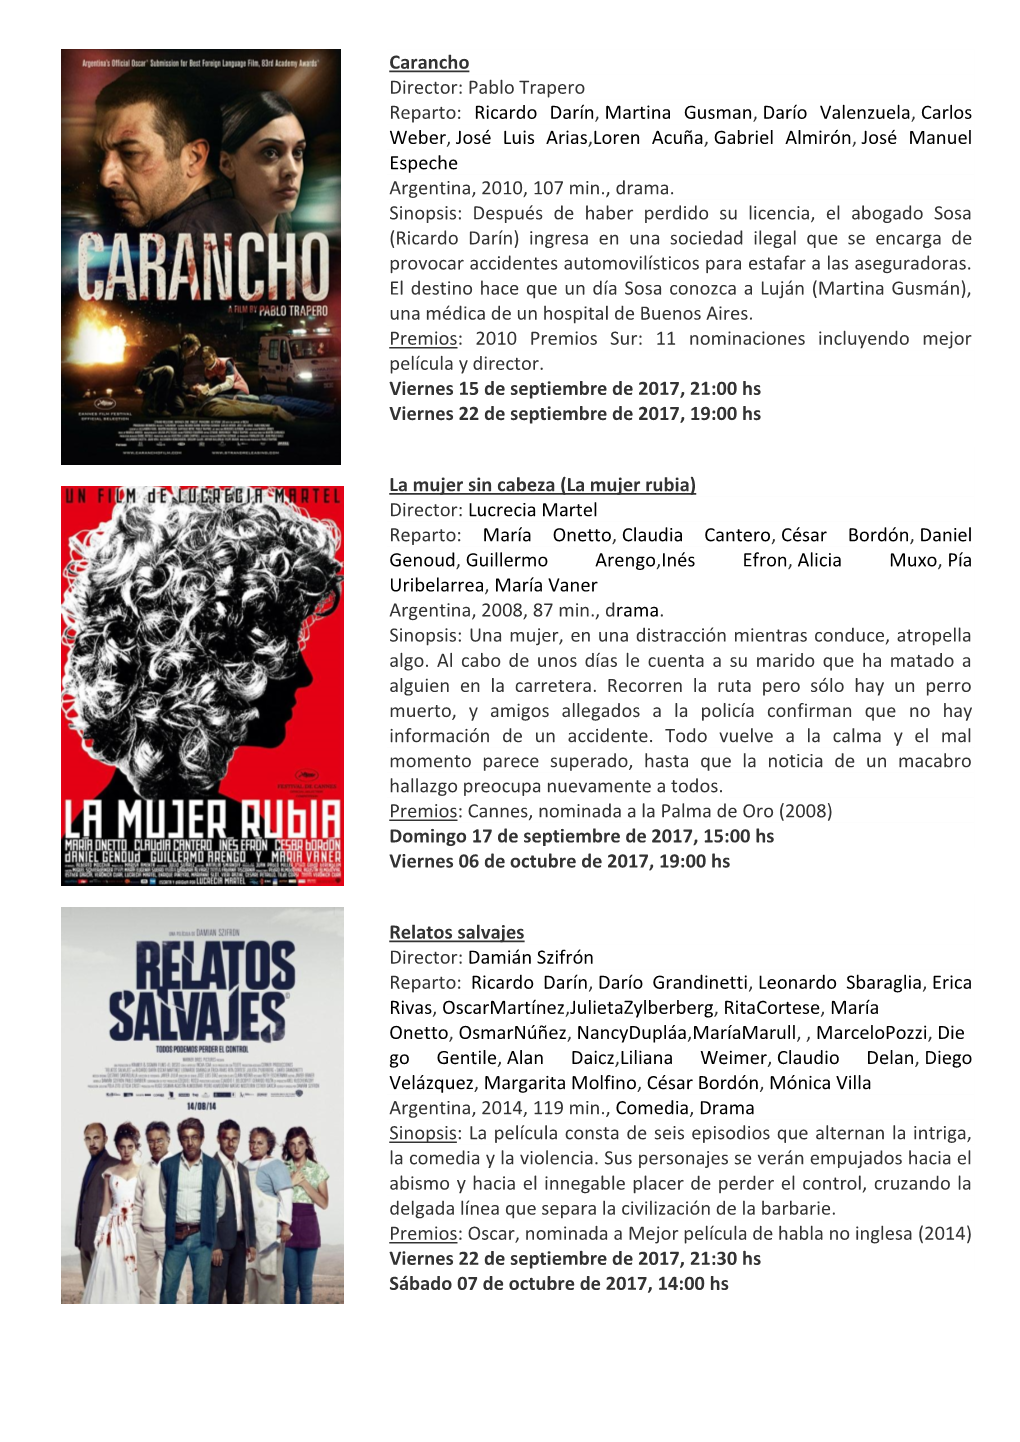 Carancho Director: Pablo Trapero Reparto: Ricardo Darín , Martina Gusman, Darío Valenzuela , Carlos Weber, José Luis Arias ,L